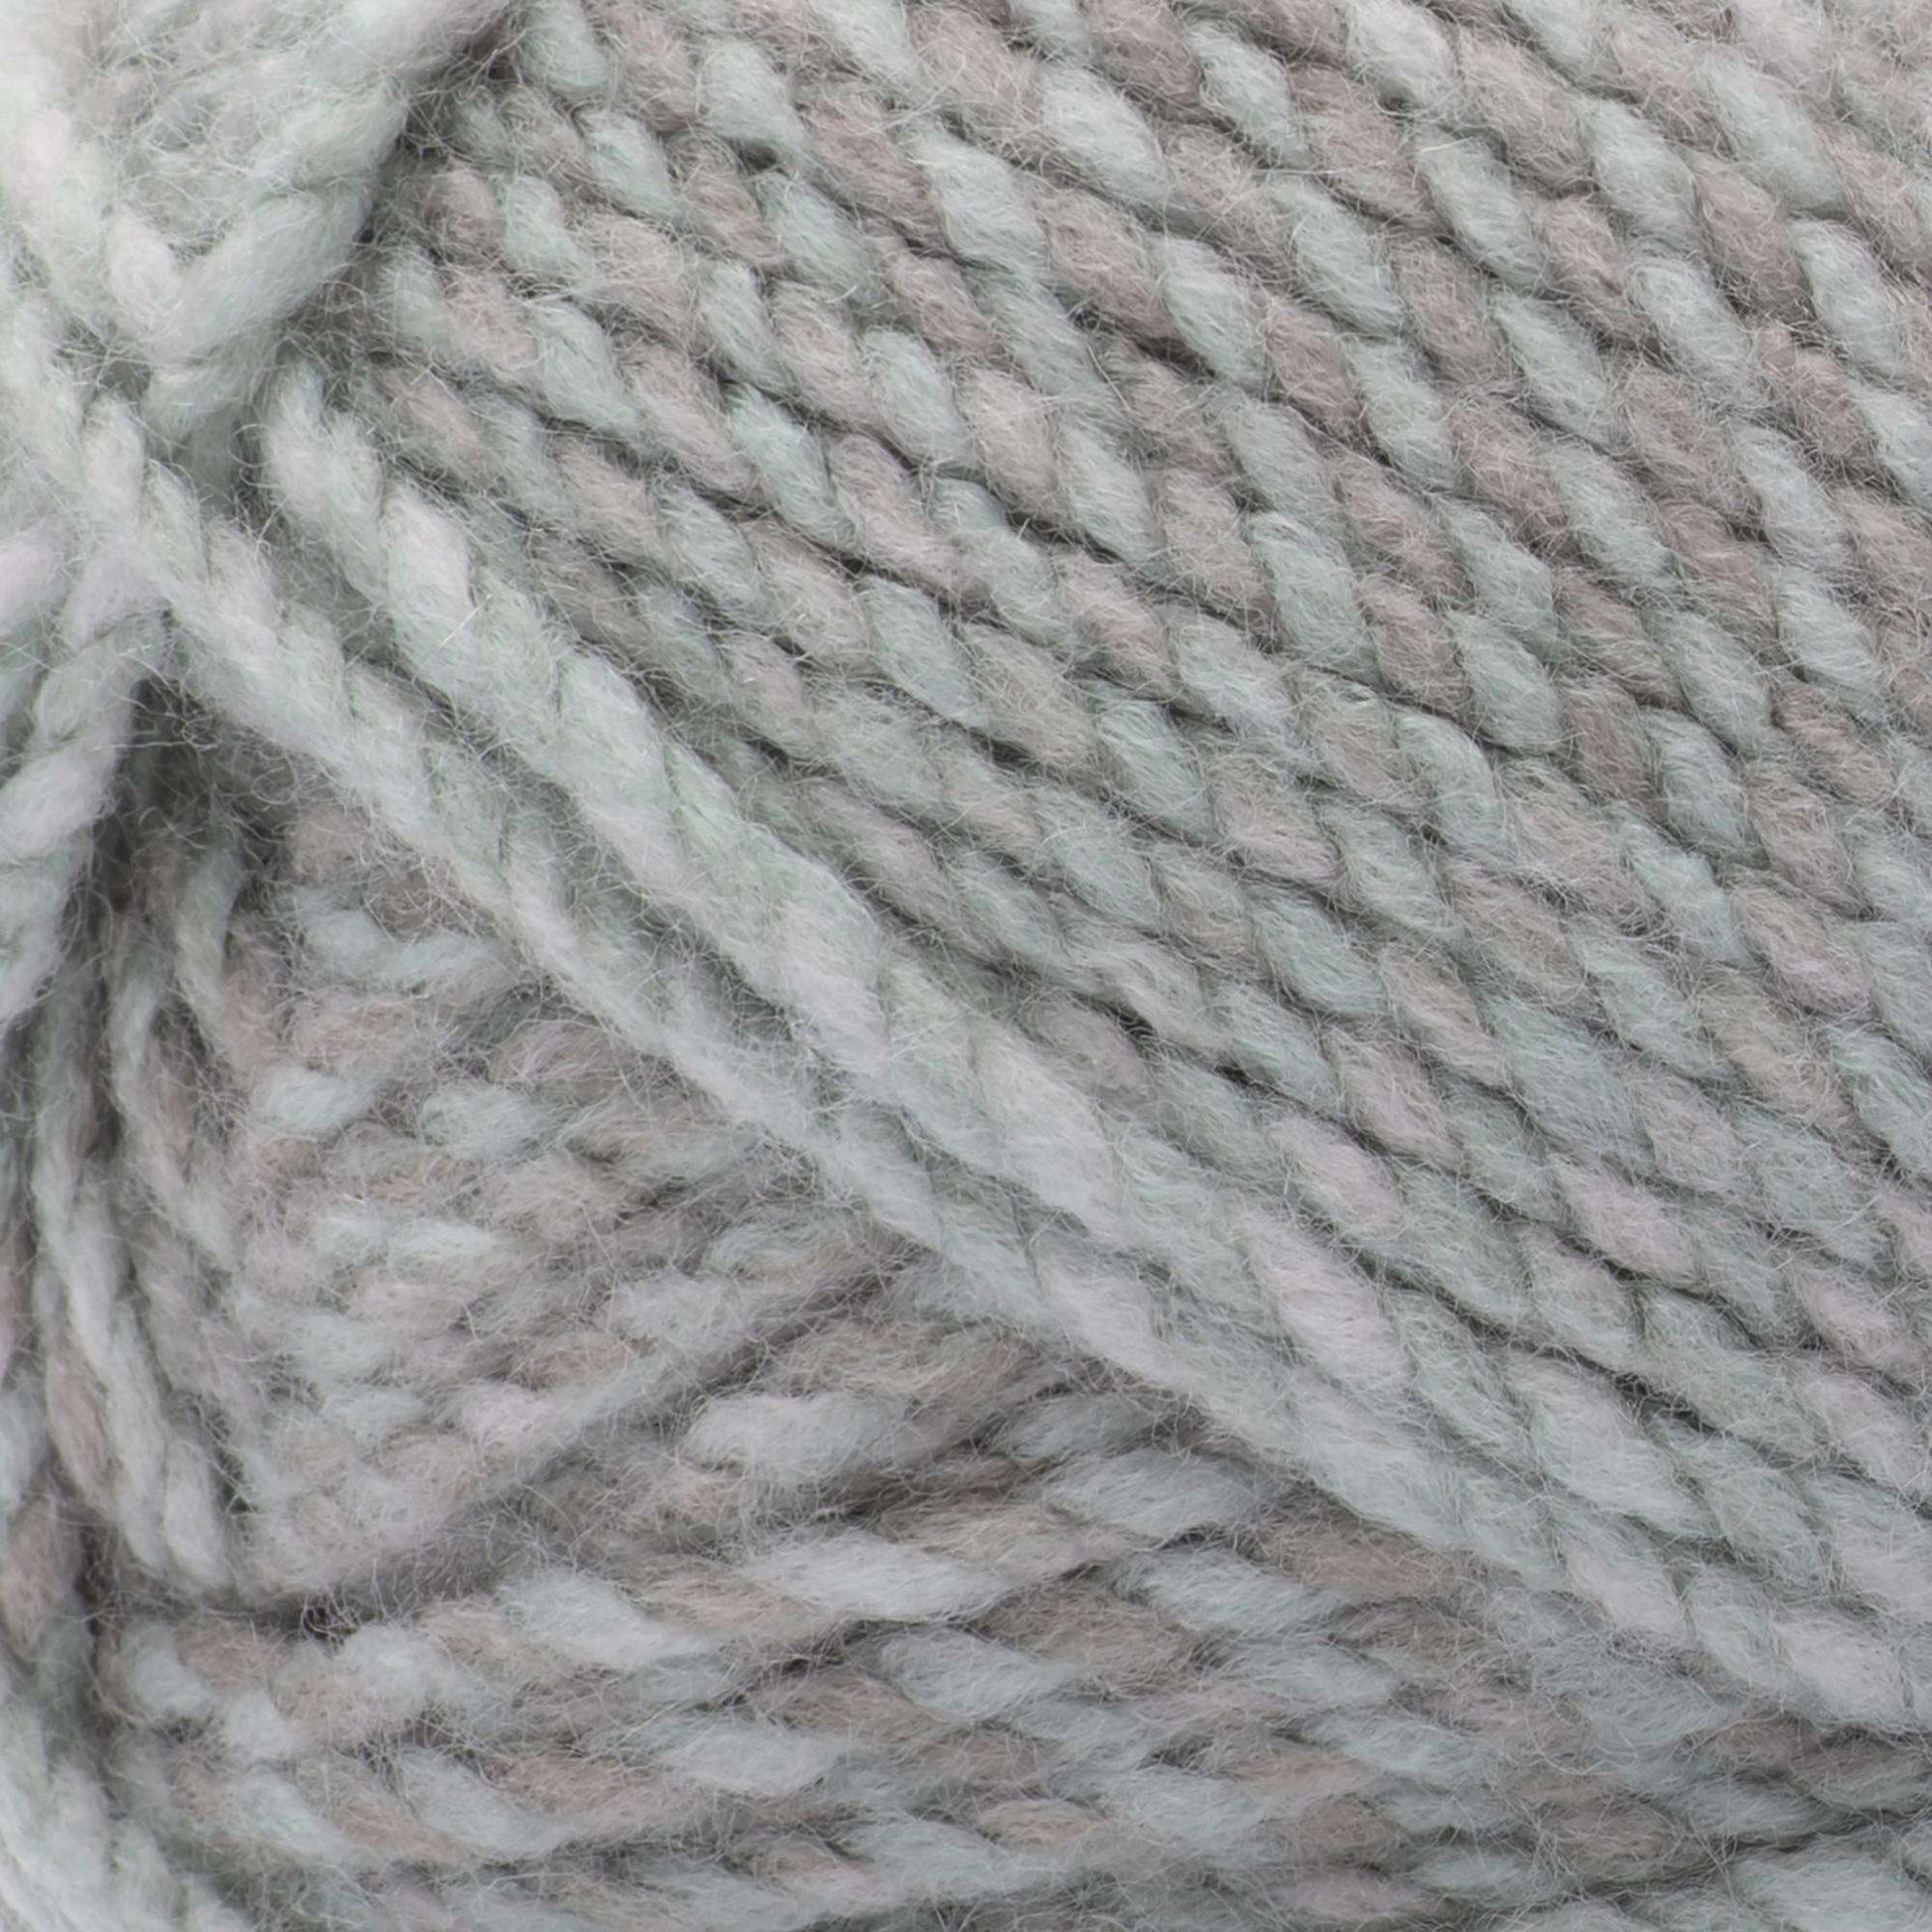 Spinrite 161200-110 Blanket Yarn, Navy, 5.3 oz